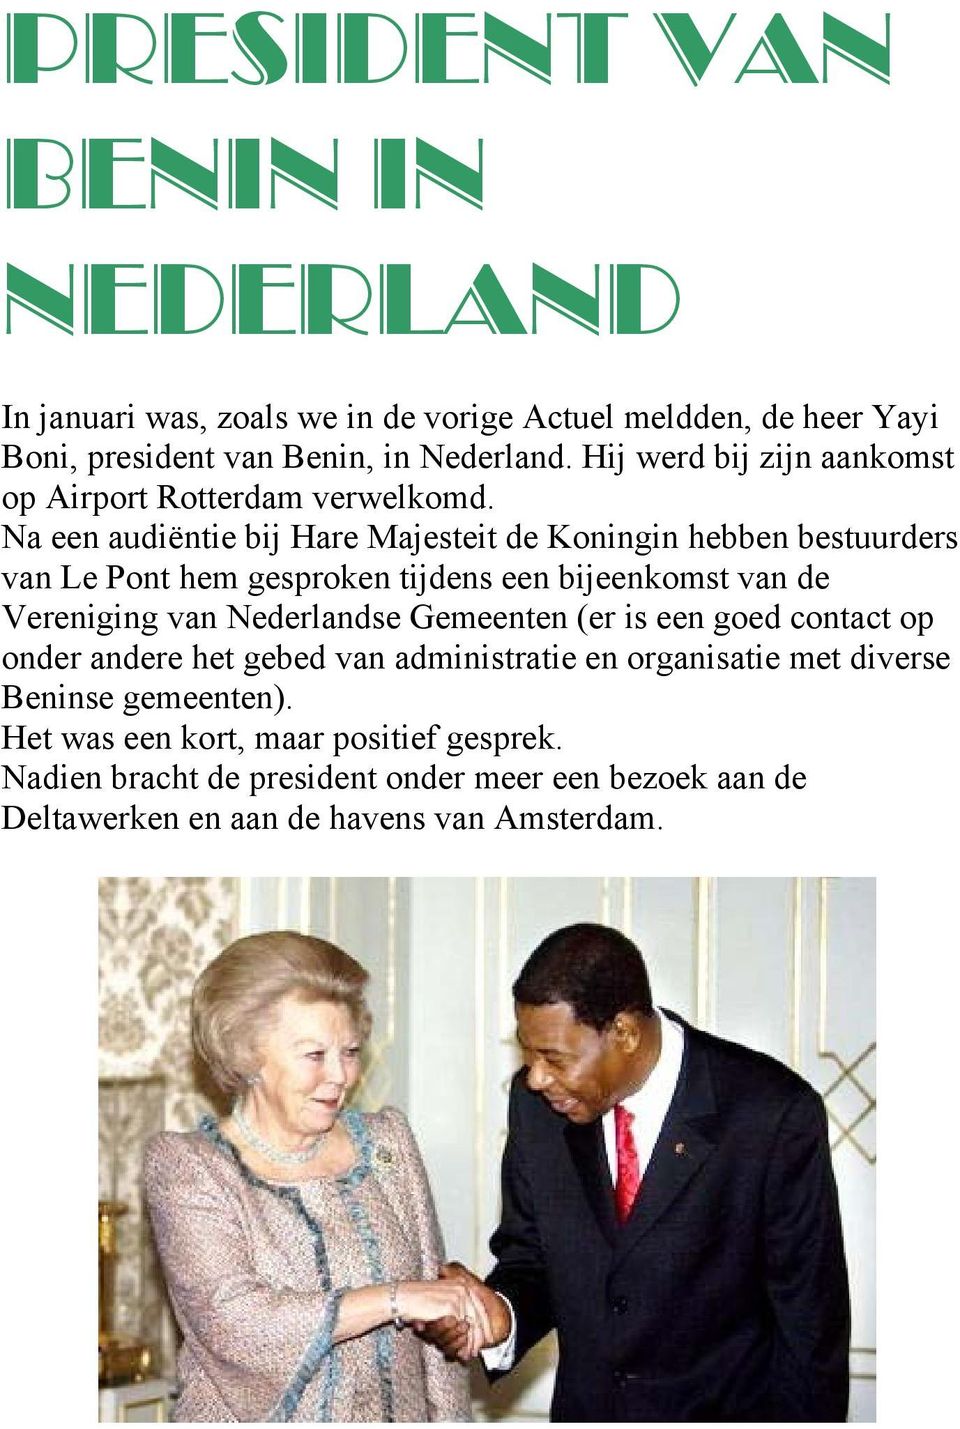 Na een audiëntie bij Hare Majesteit de Koningin hebben bestuurders van Le Pont hem gesproken tijdens een bijeenkomst van de Vereniging van Nederlandse